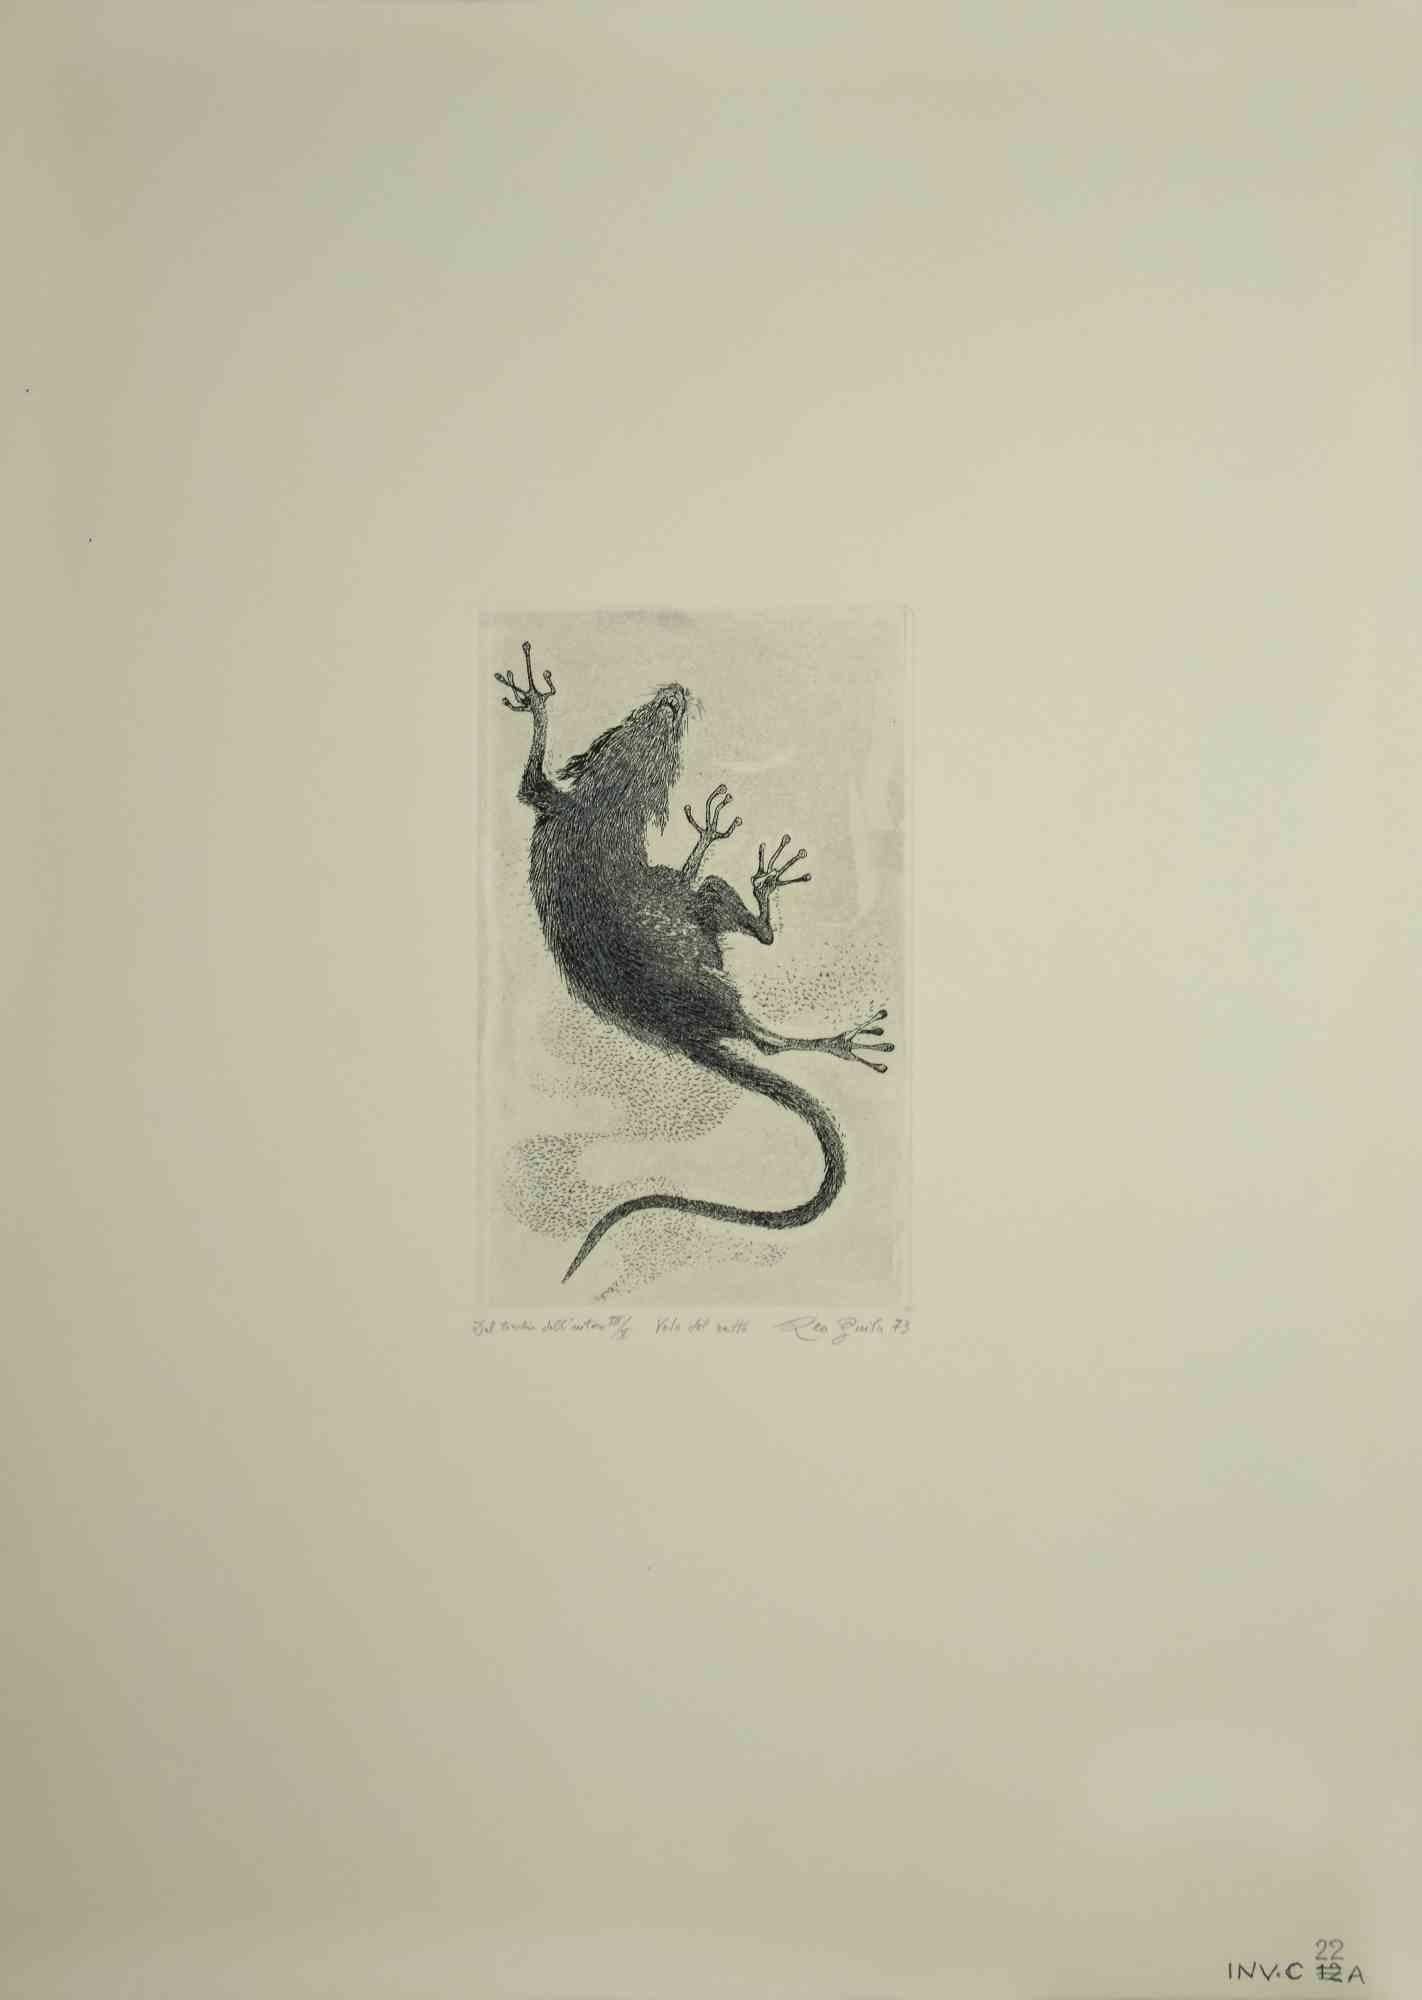 Der Flug der Ratte (Volo del ratto) ist ein originales zeitgenössisches Kunstwerk, das  im Jahr 1973  von dem italienischen zeitgenössischen Künstler  Leo Guida  (1992 - 2017).

Farbige Originalradierung auf elfenbeinfarbenem Karton.

Am unteren